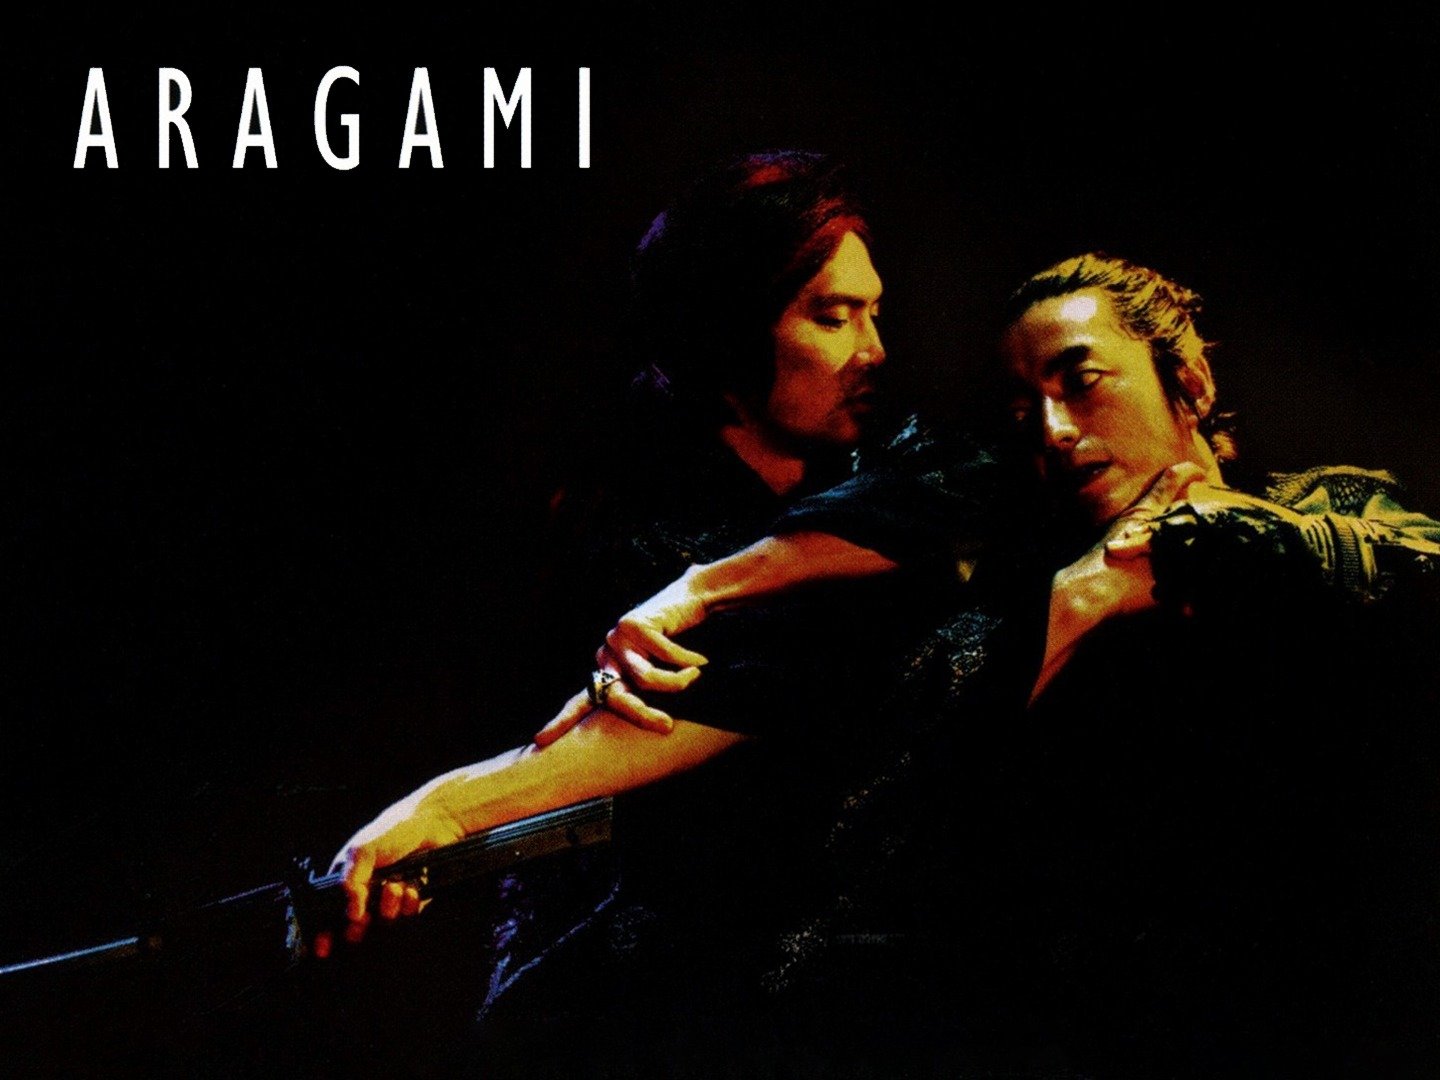 aragami review